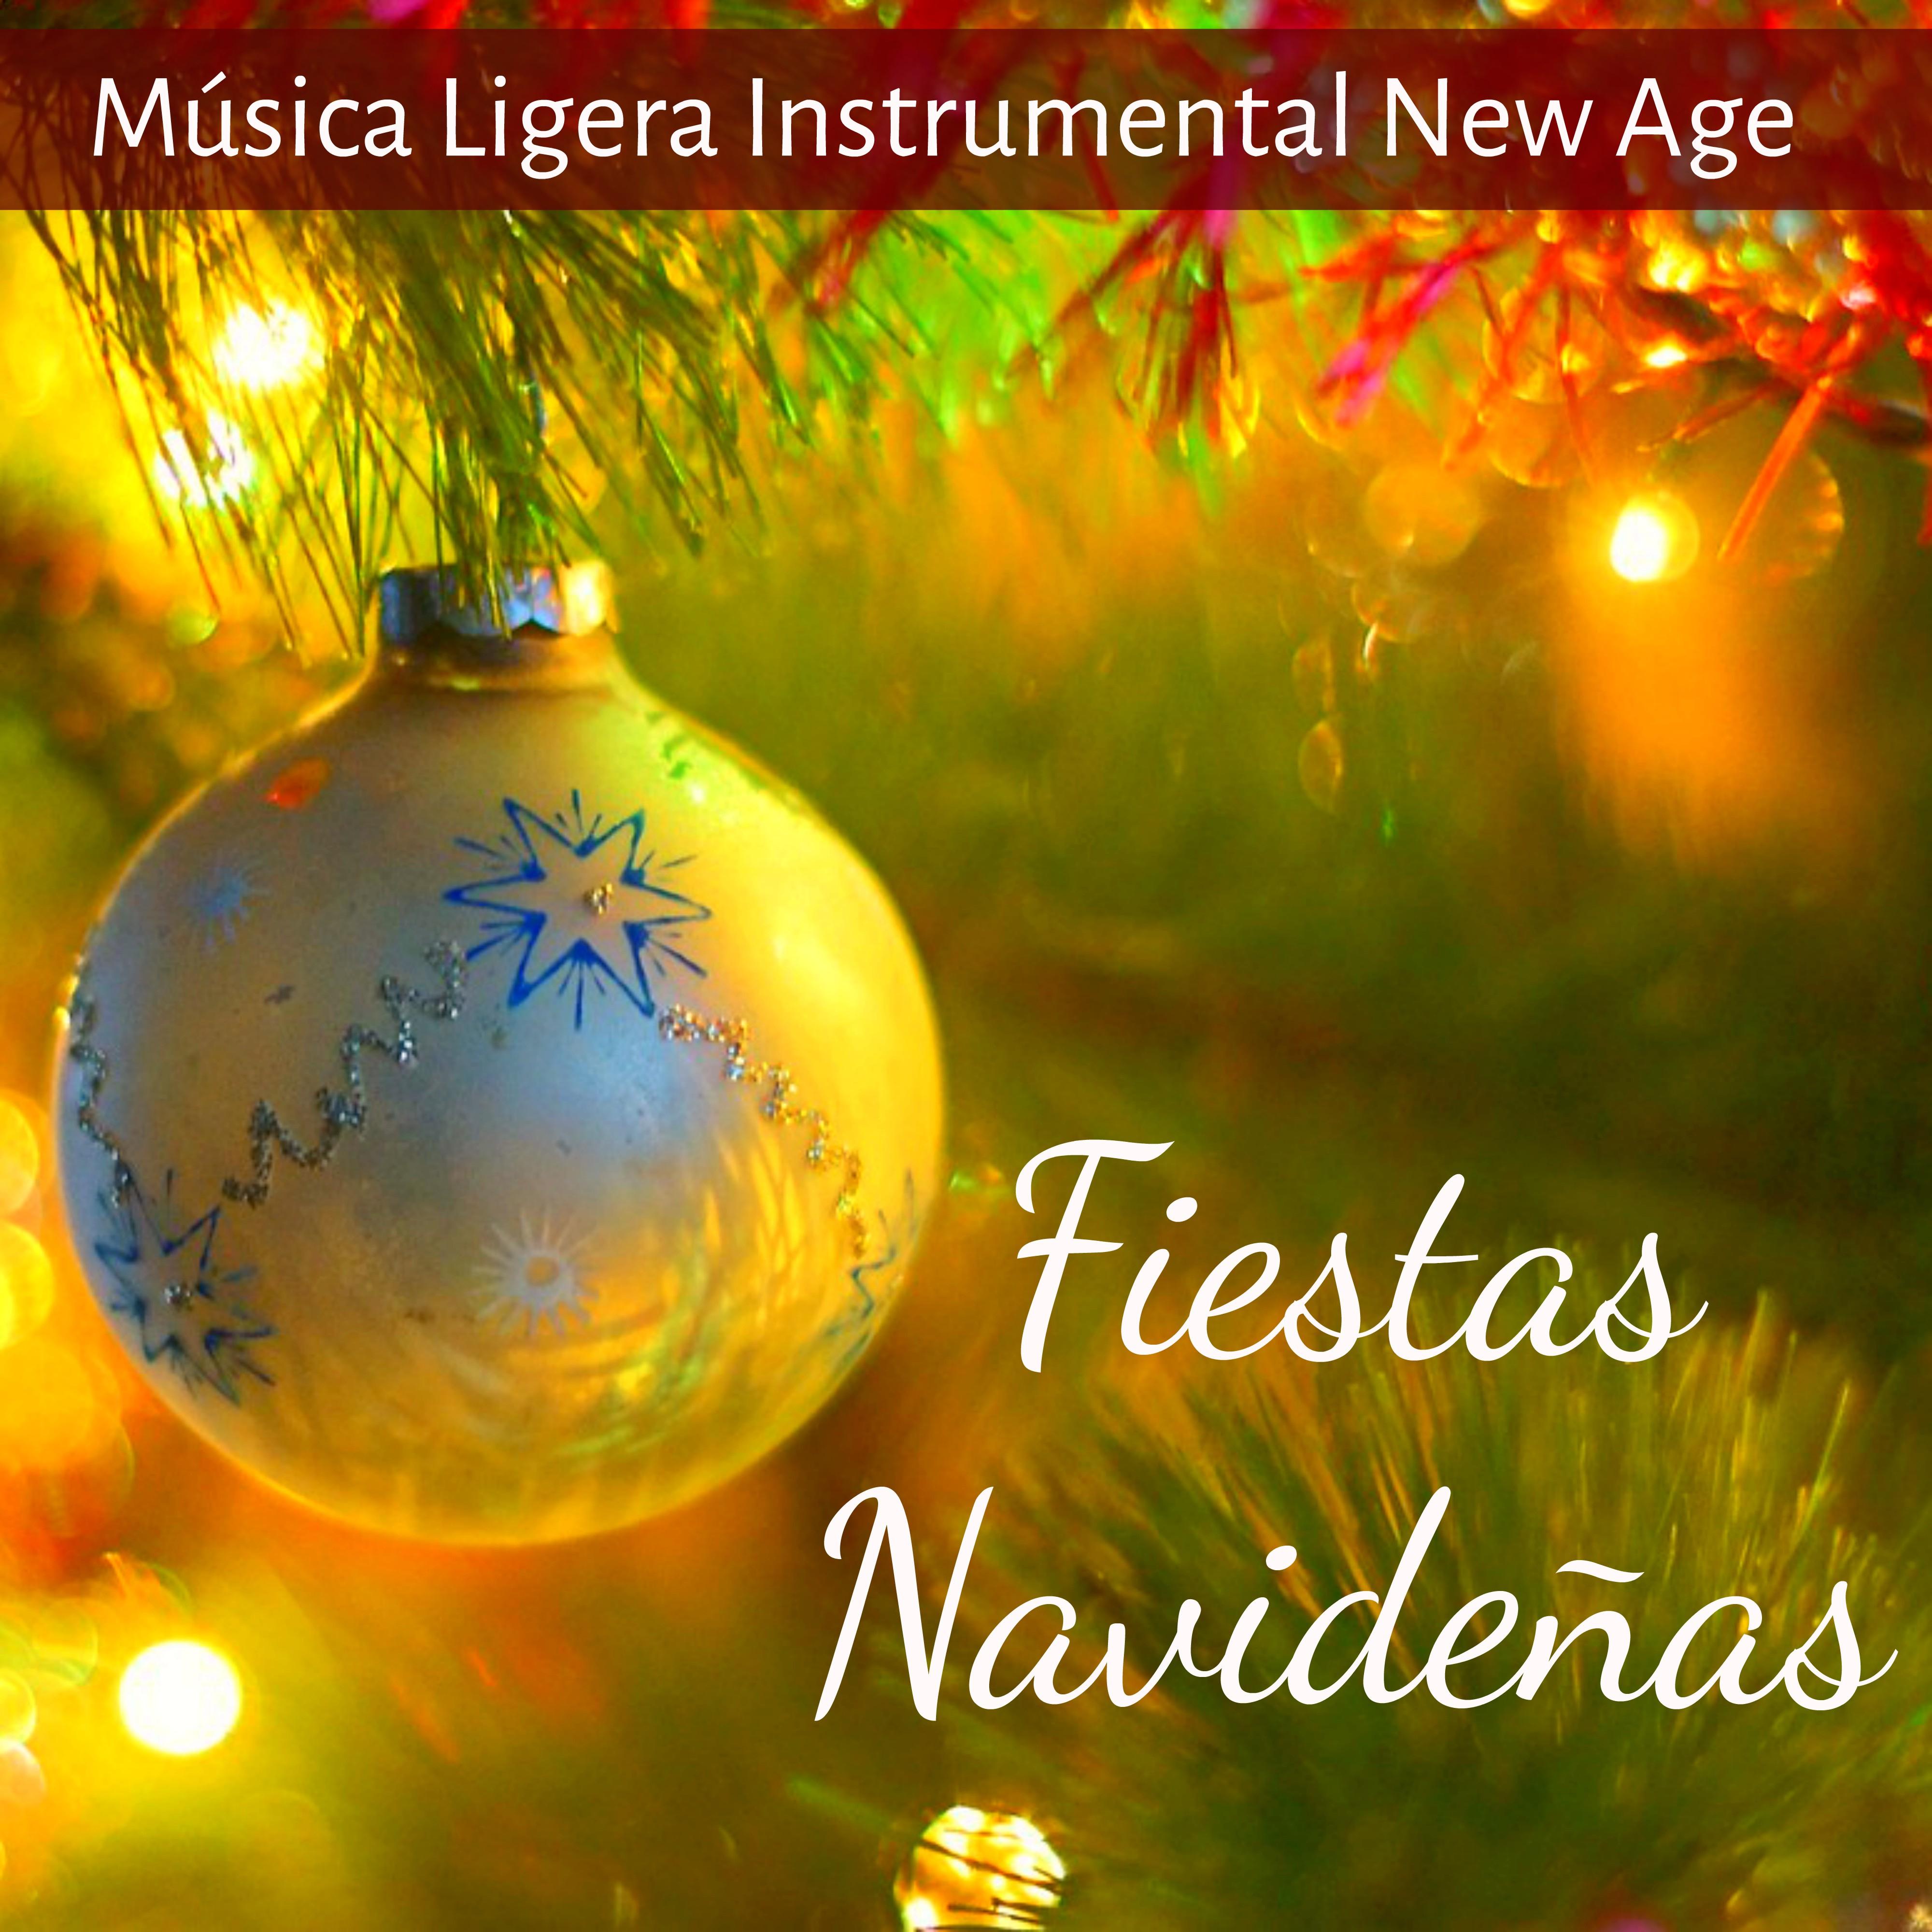 Fiestas Navideñas - Música Ligera Instrumental New Age de la Naturaleza para Gordo Navidad Chakras del Cuerpo Humano y Relajar la Mente